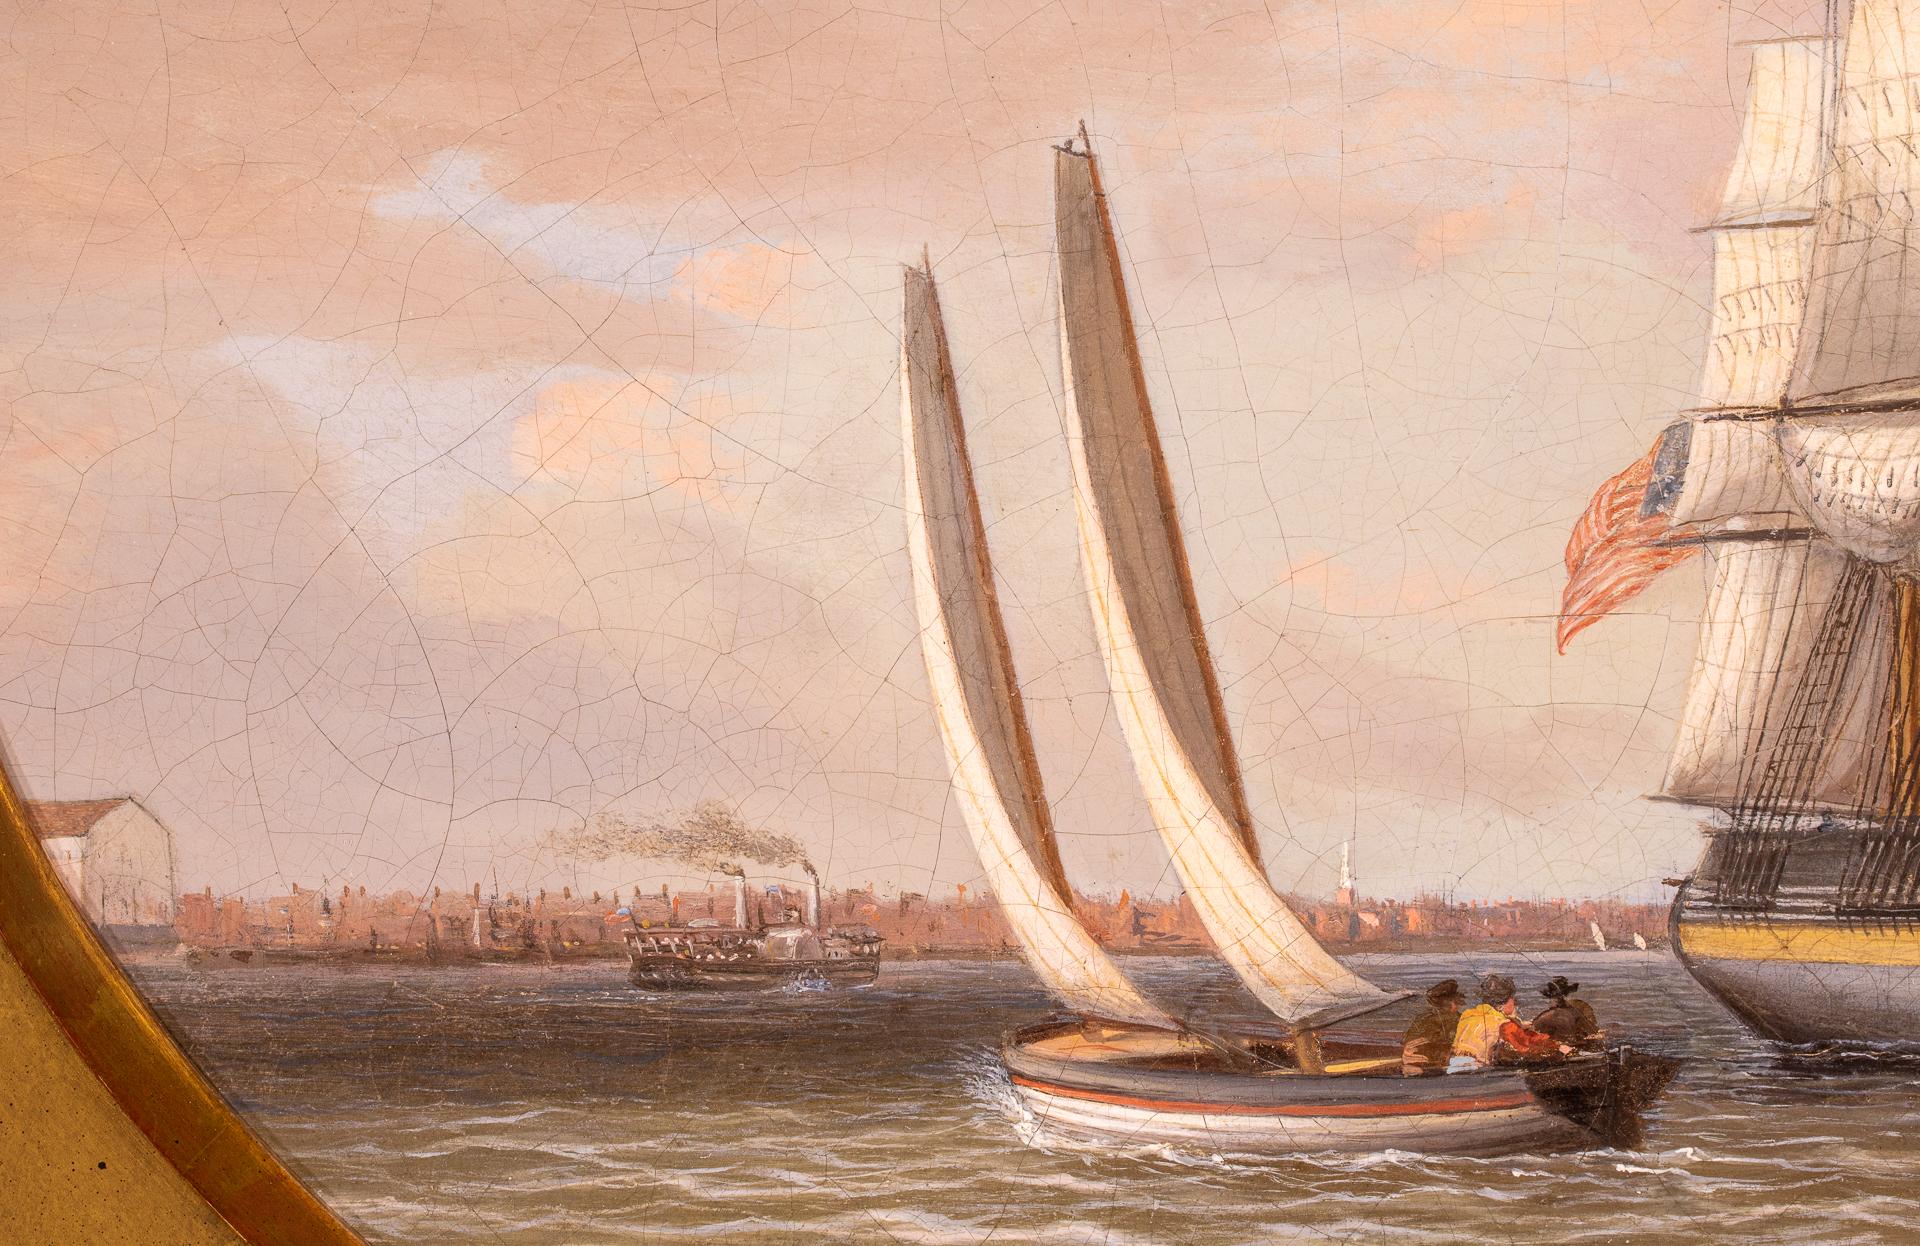 Amerkanisches Handelsschiff in Philadelphia- Hafen (Braun), Landscape Painting, von Thomas Birch